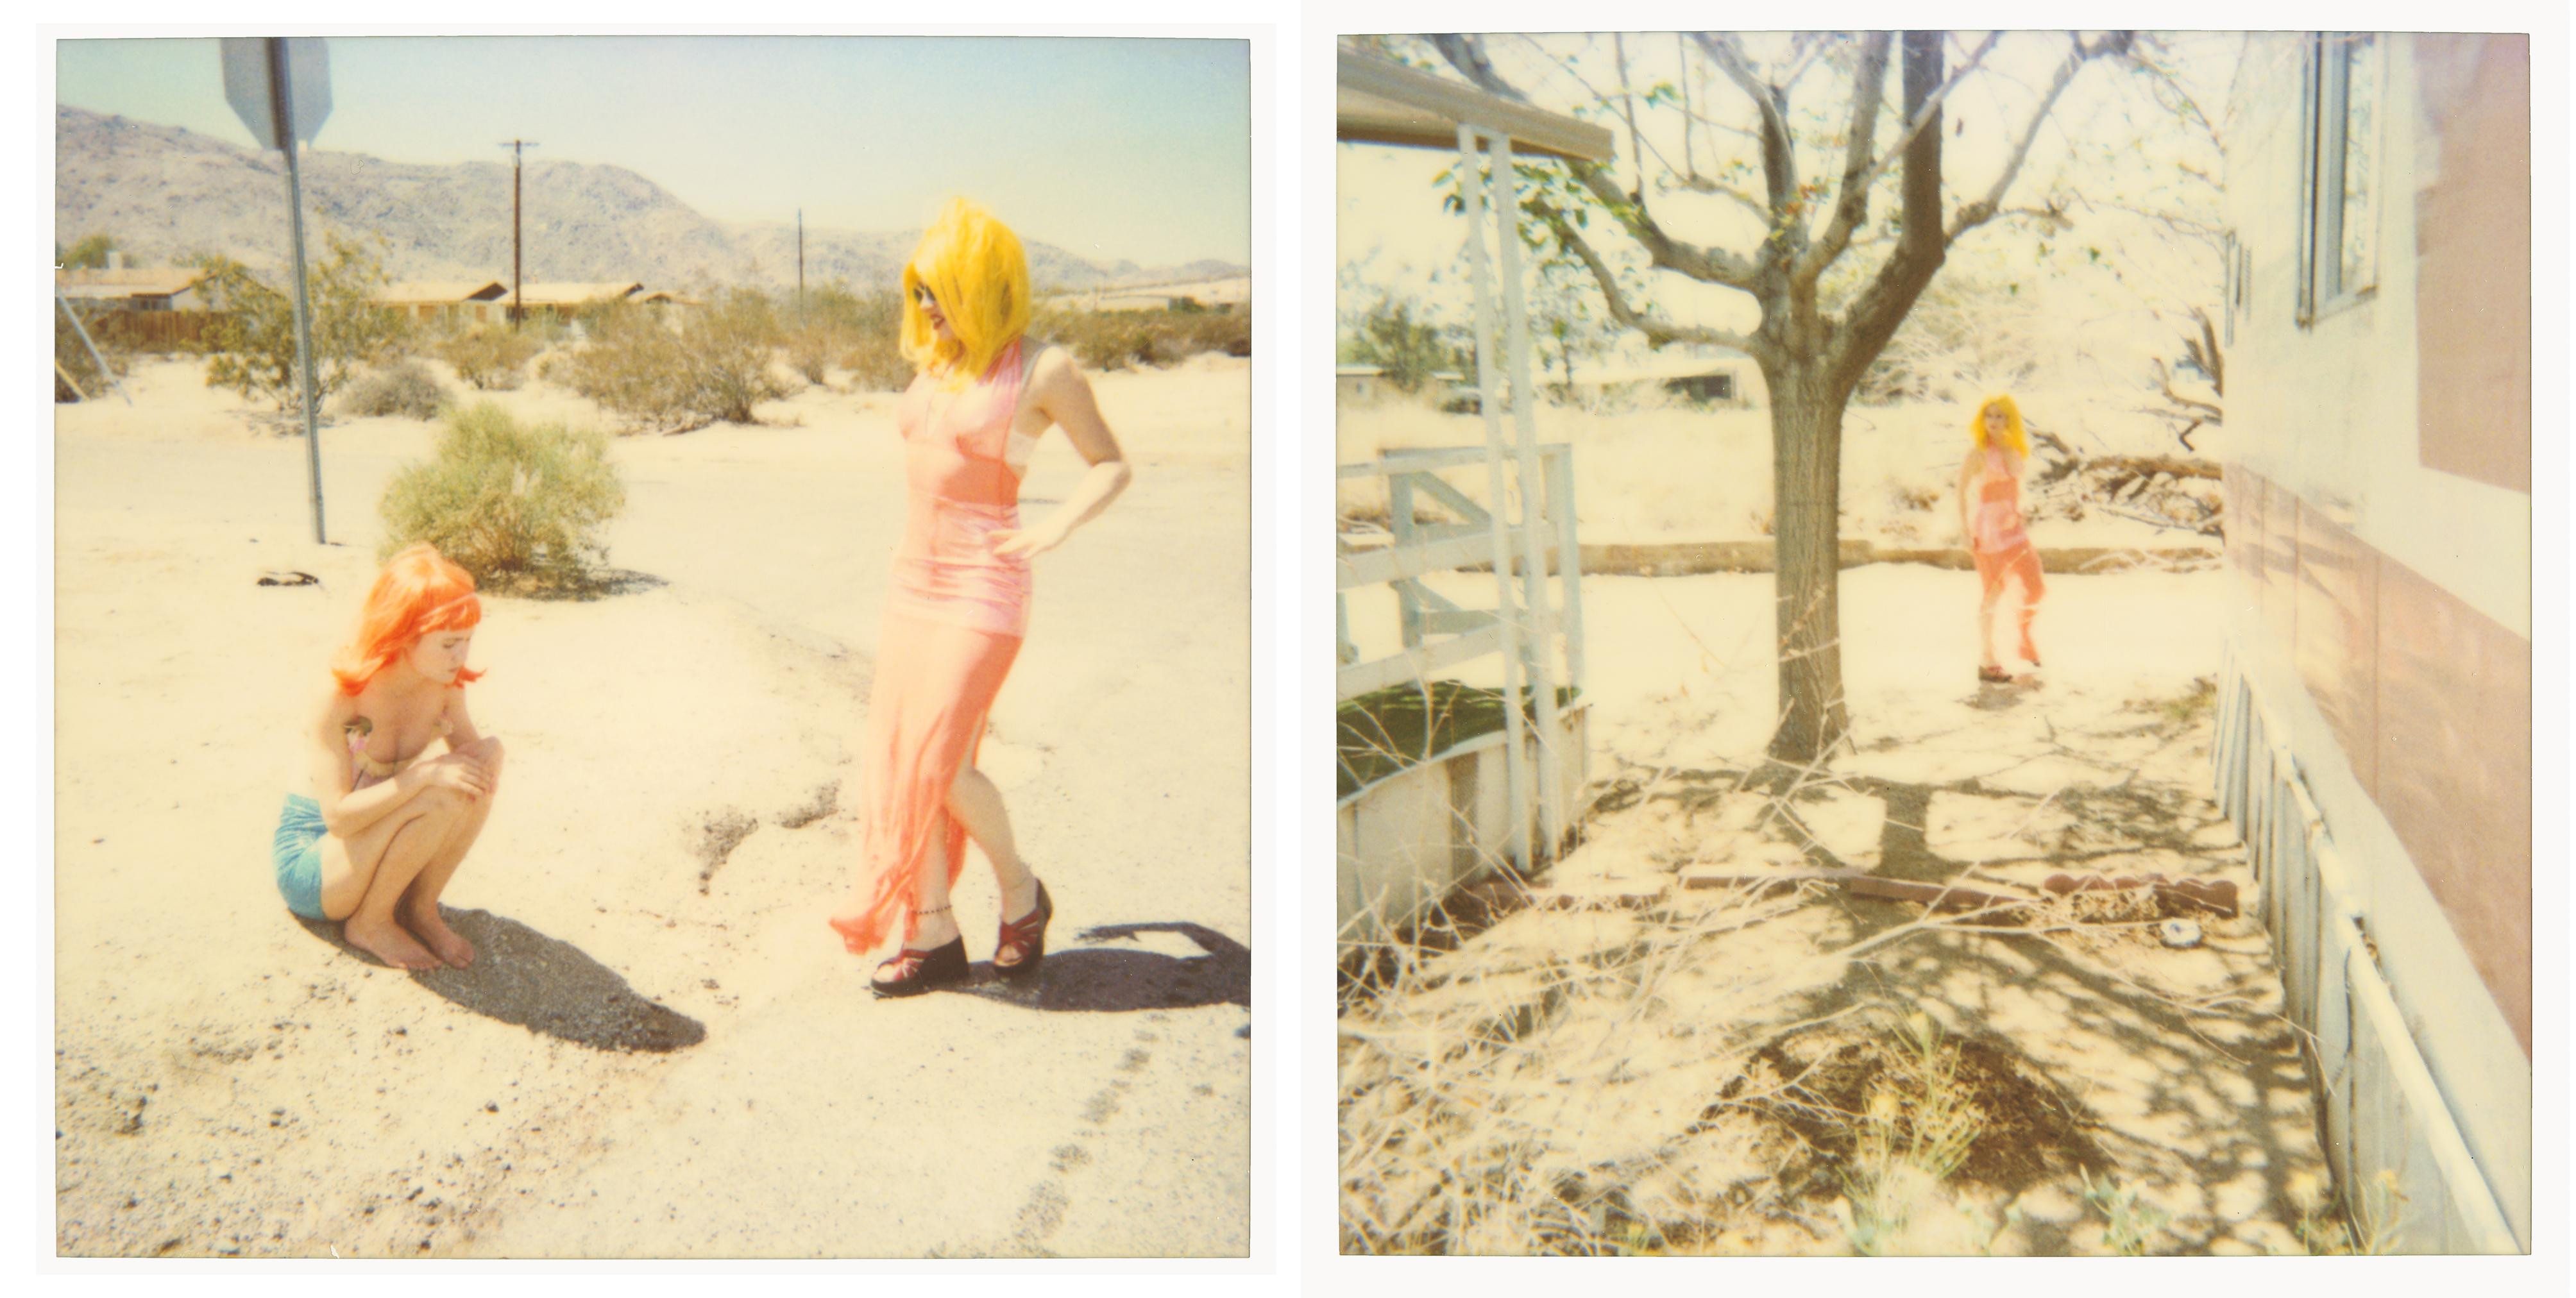 Radha und Max on Dirt Road (29 Palms, CA) – analog, Polaroid, zeitgenössisch